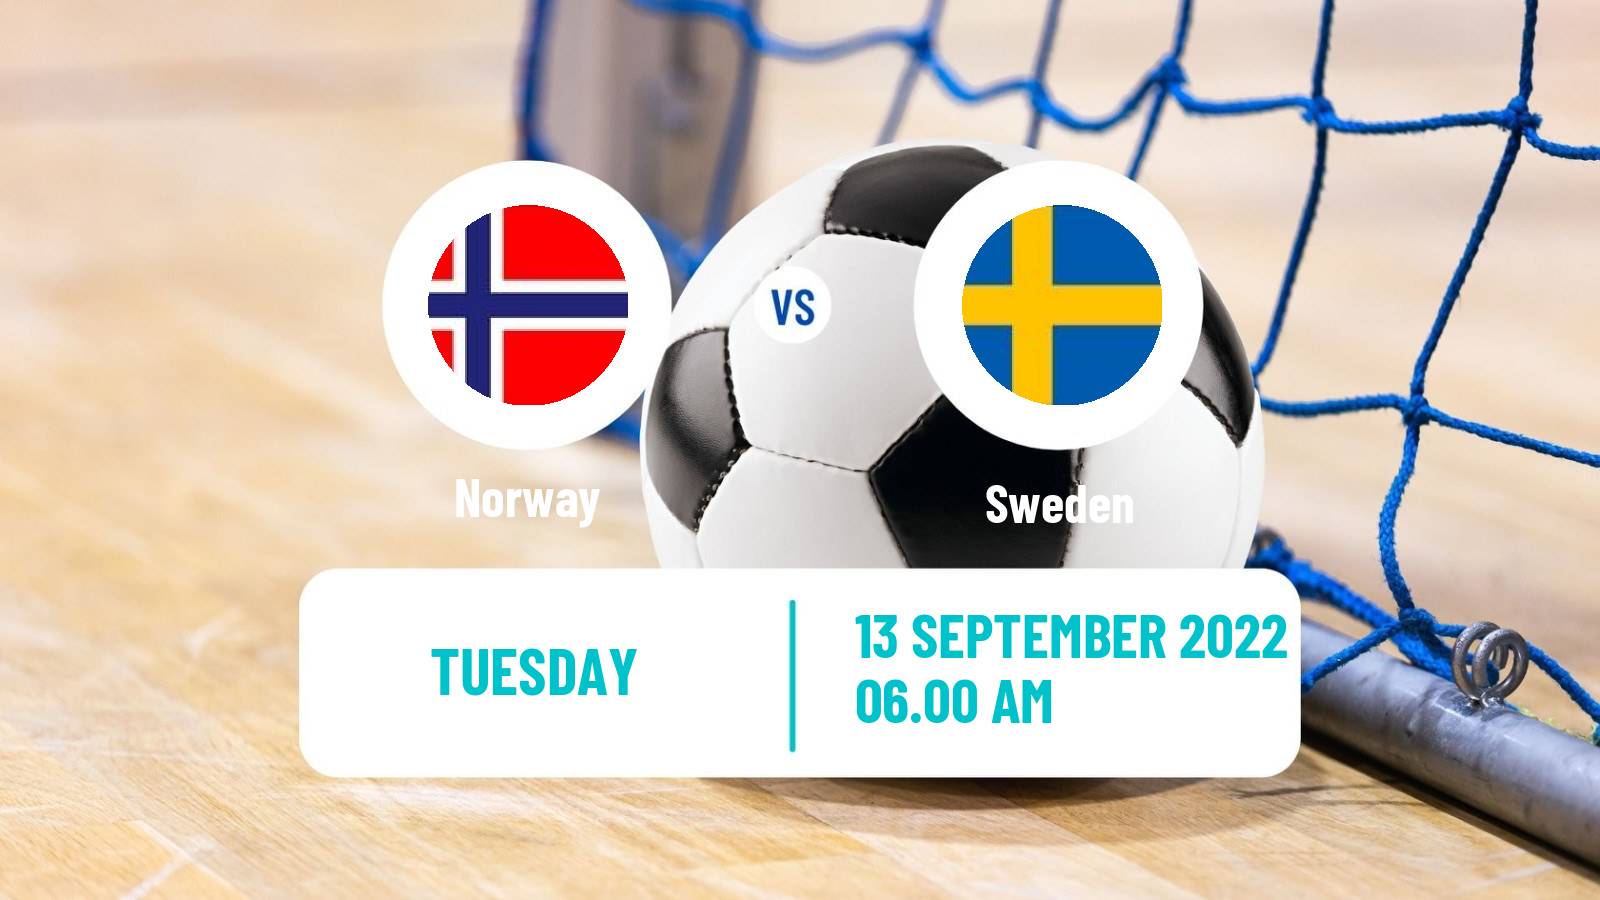 Futsal Friendly International Futsal Norway - Sweden